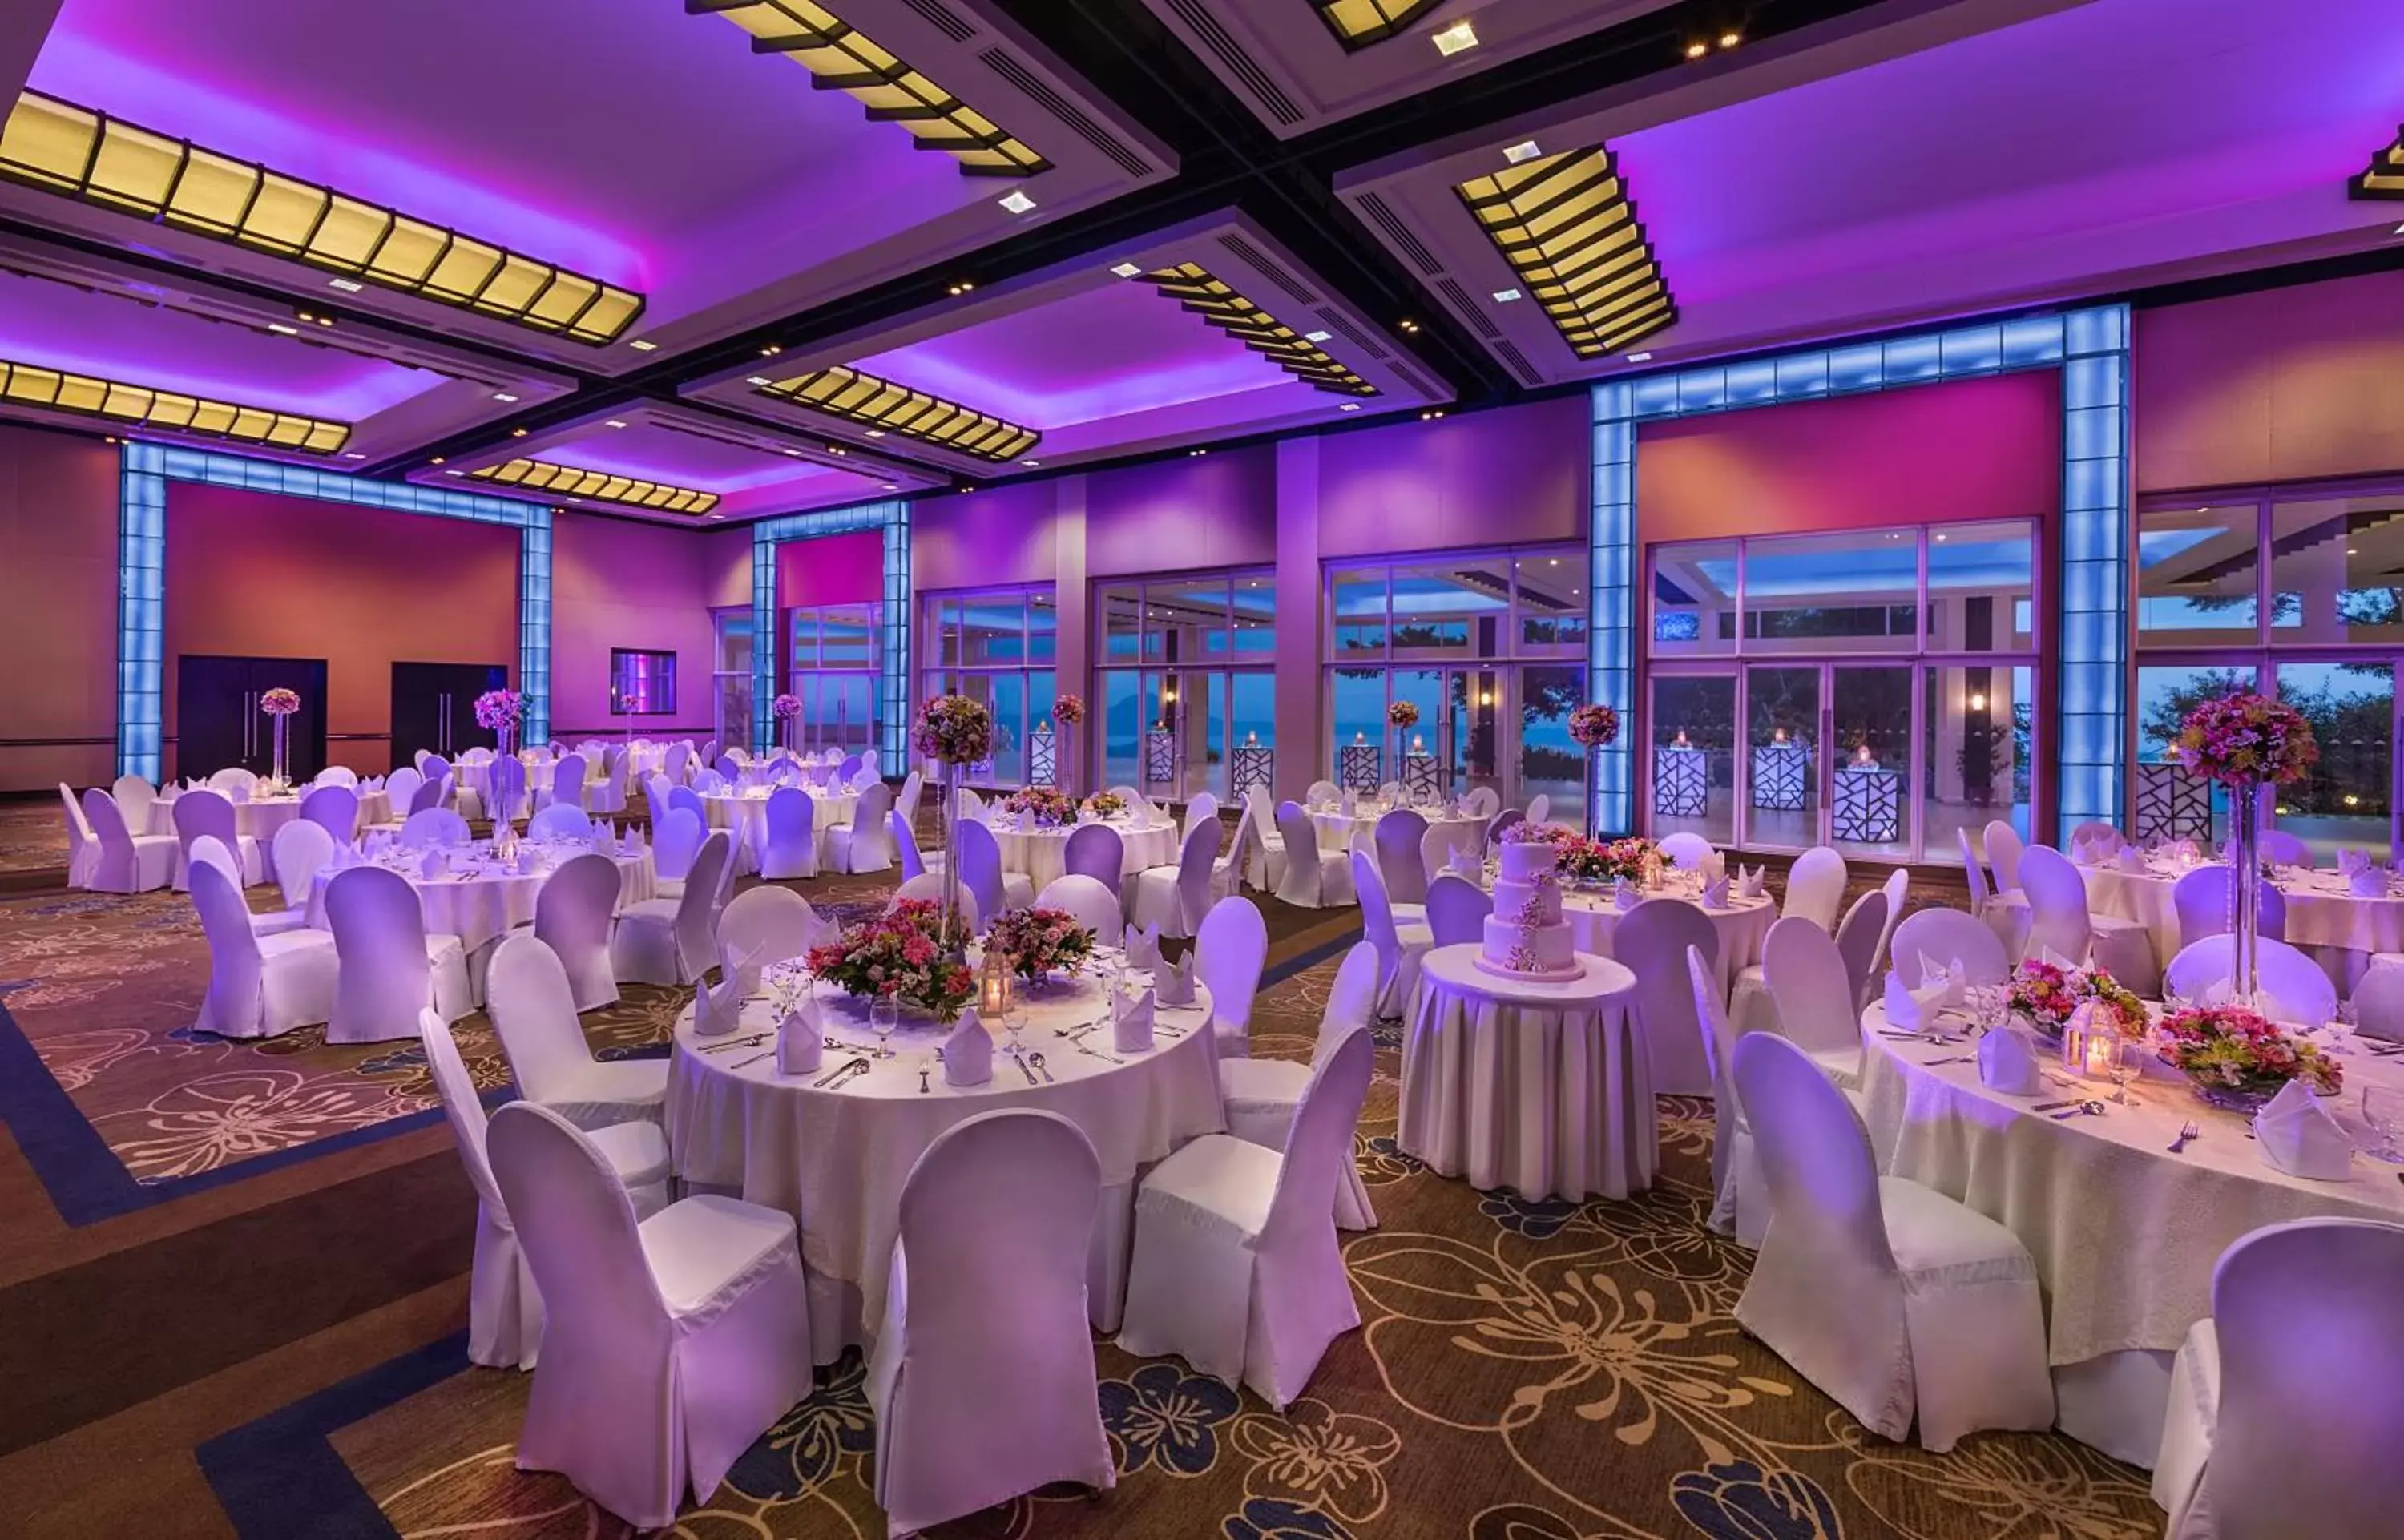 Banquet/Function facilities, Banquet Facilities in Taal Vista Hotel